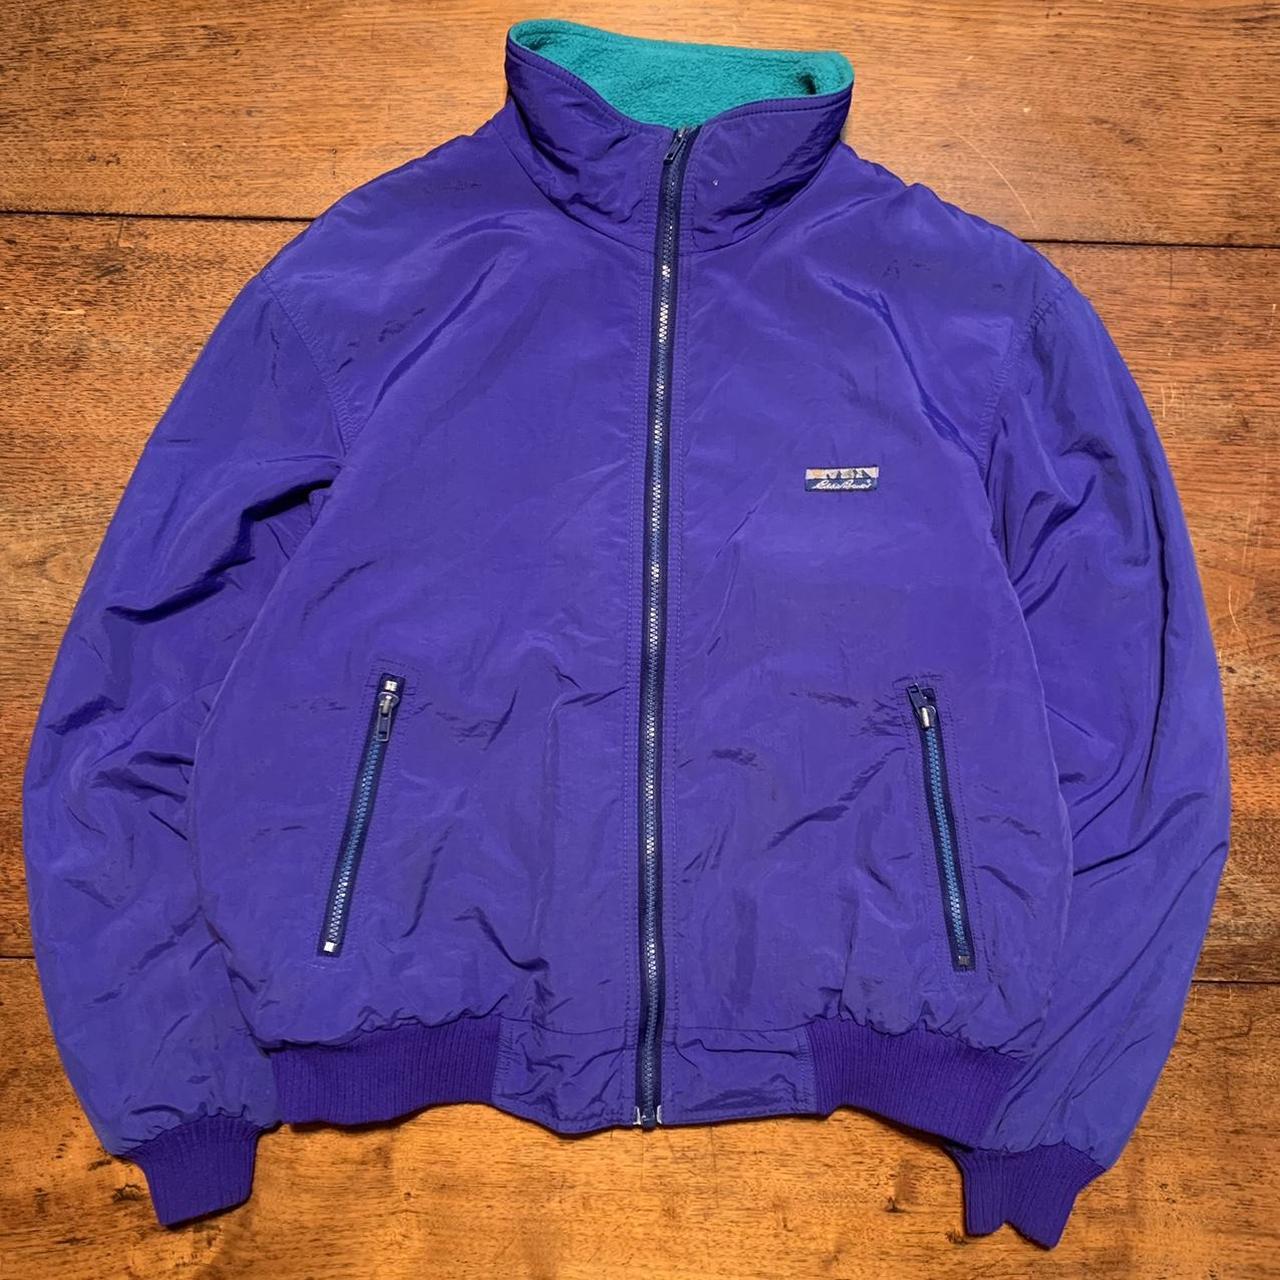 Vintage 90s Eddie Bauer Fleece Lined Zip Up Jacket - Depop